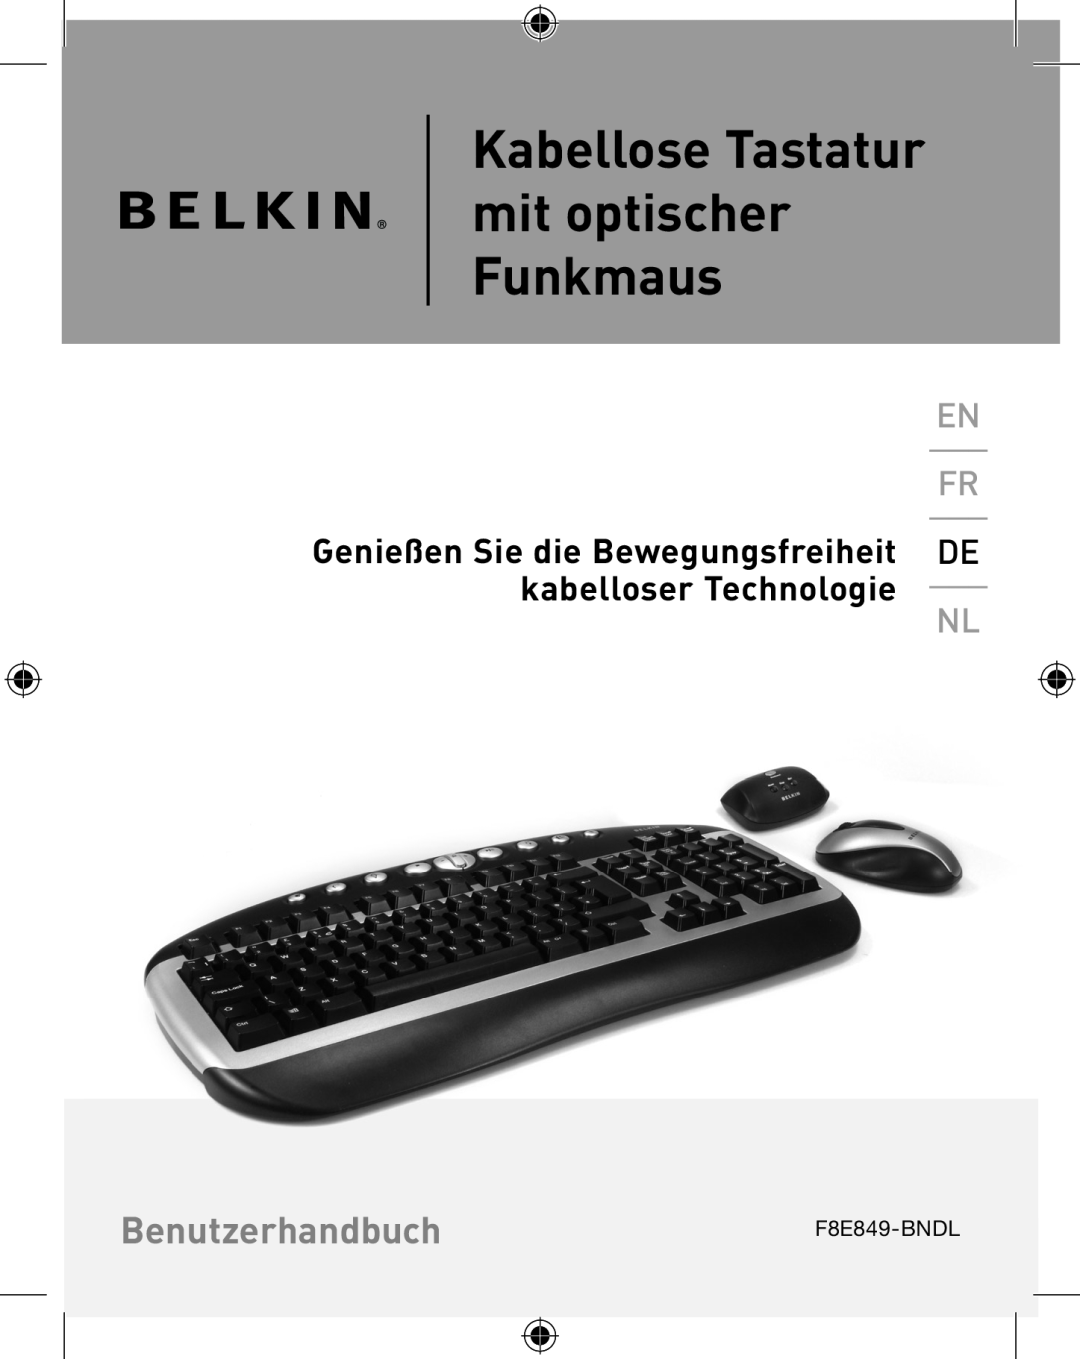 Belkin F8E849-BNDL, P74775UK user manual Kabellose Tastatur mit optischer Funkmaus, Benutzerhandbuch 